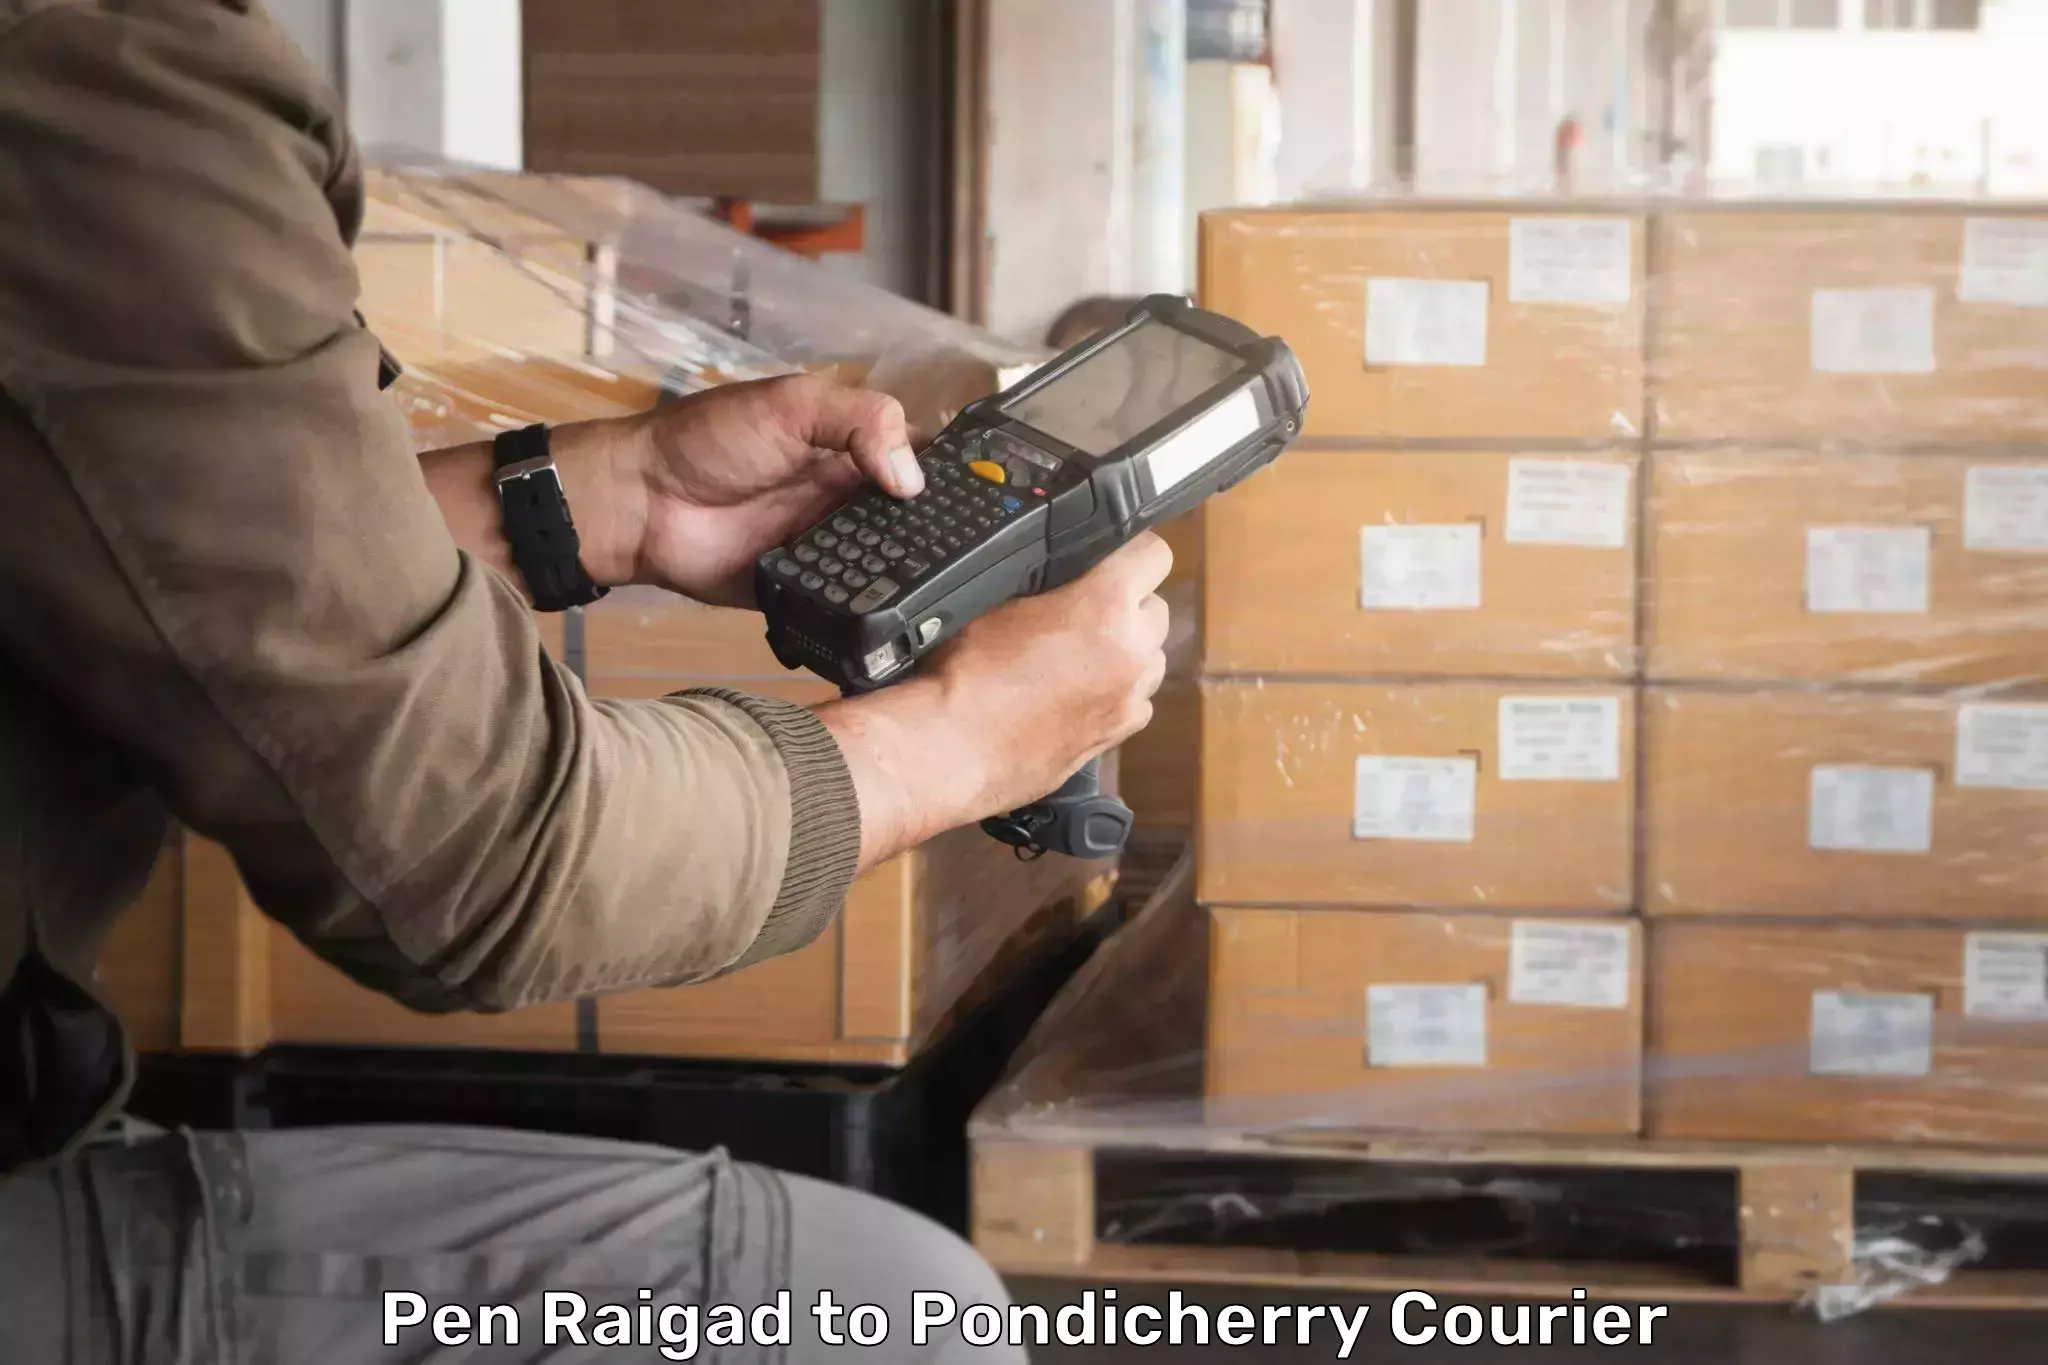 24-hour courier services Pen Raigad to Pondicherry